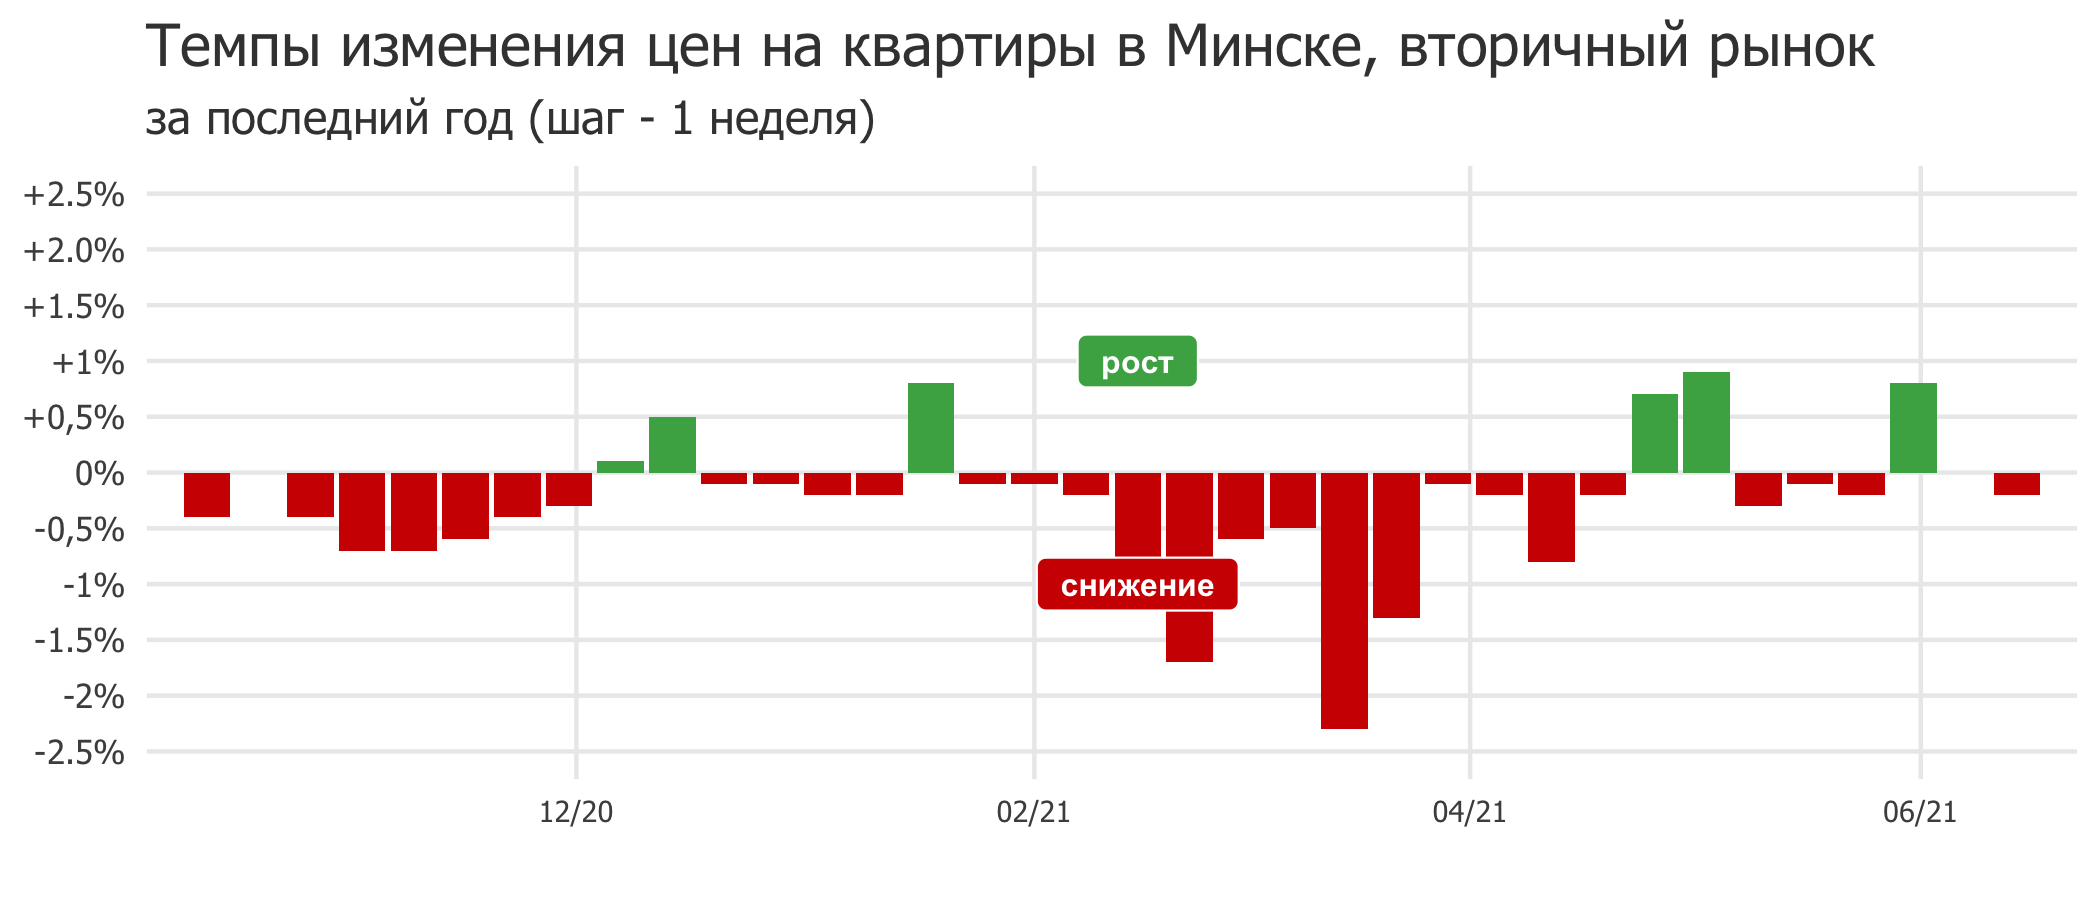 Мониторинг цен предложения квартир в Минске за 7-14 июня 2021 года